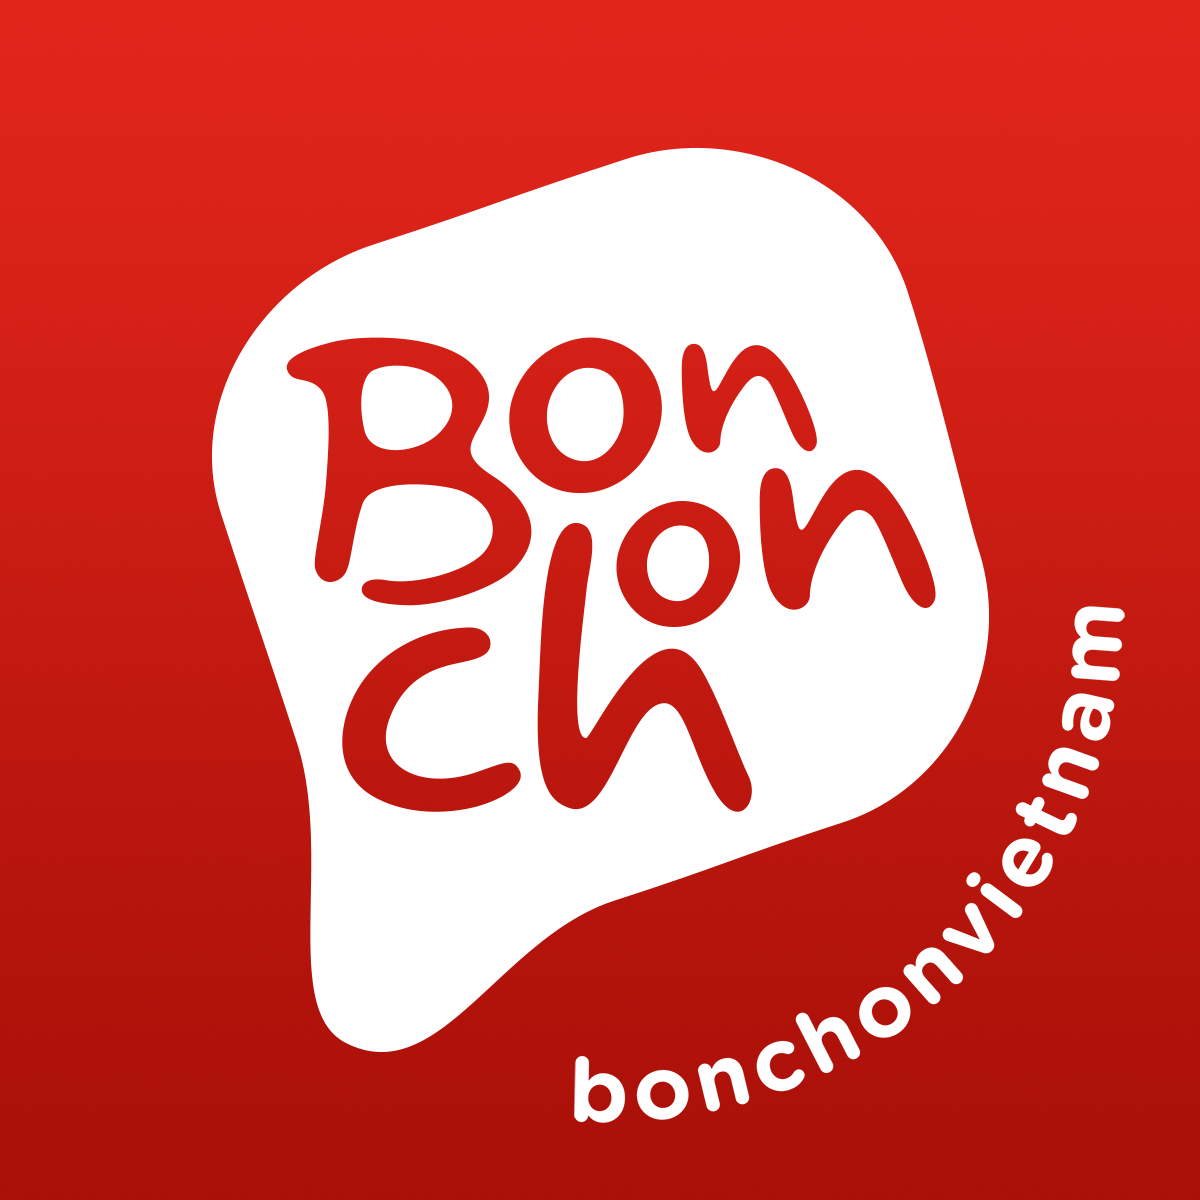 bonchon-logo-1200x1200